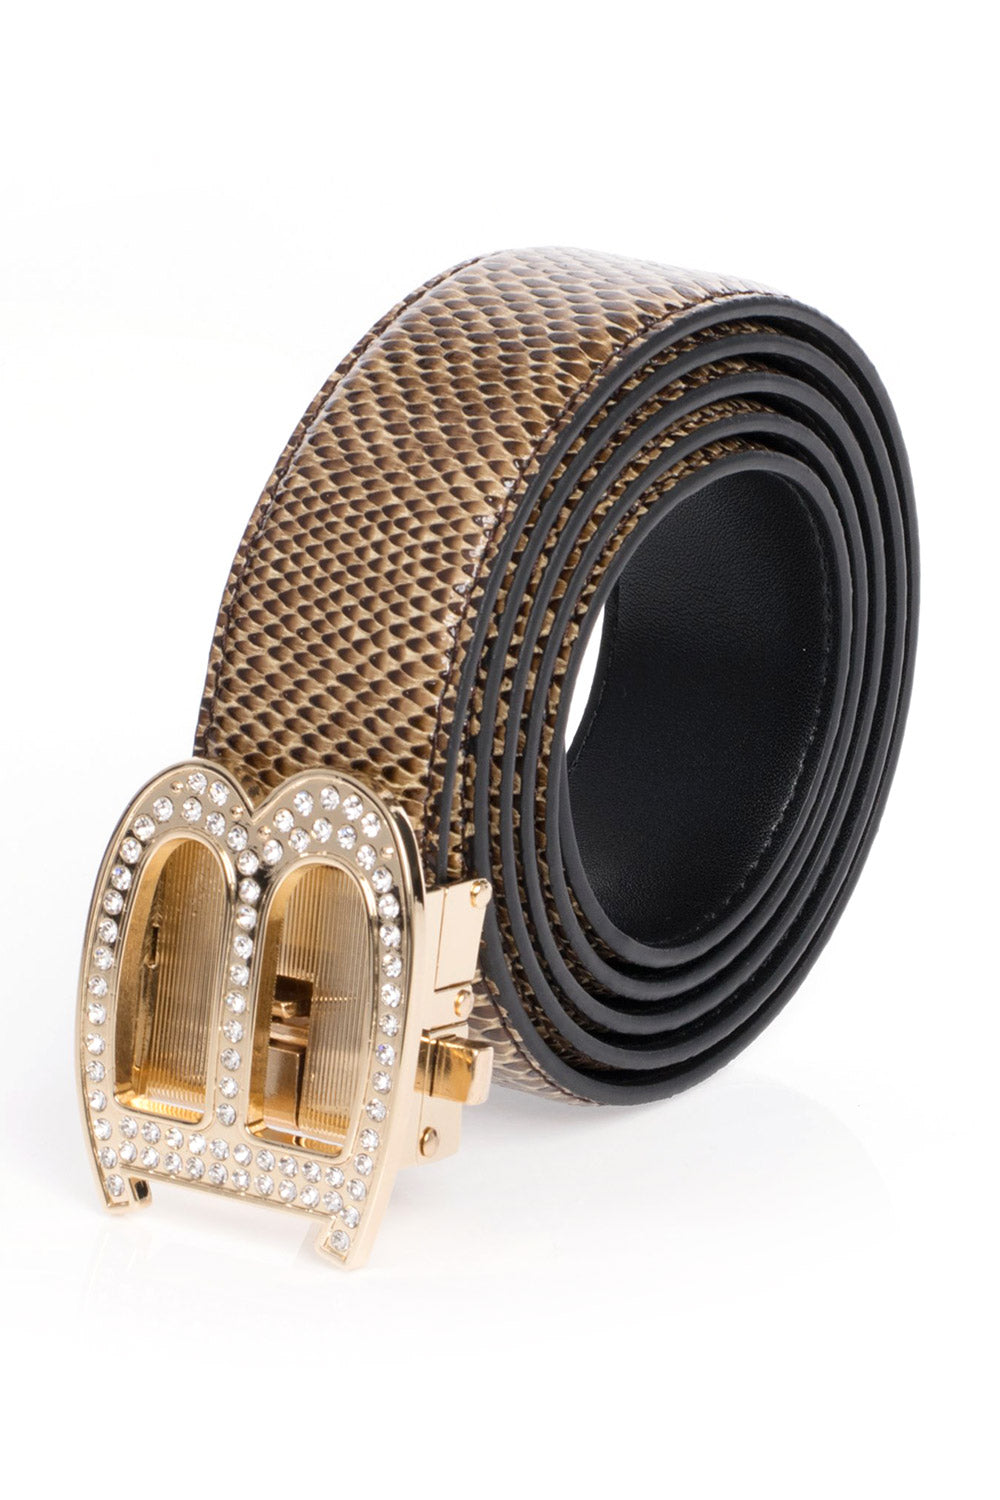 Barabas "B" Shiny Gold/Brown Snake Adjustable Luxury Leather Dress Belt - Dudes Boutique